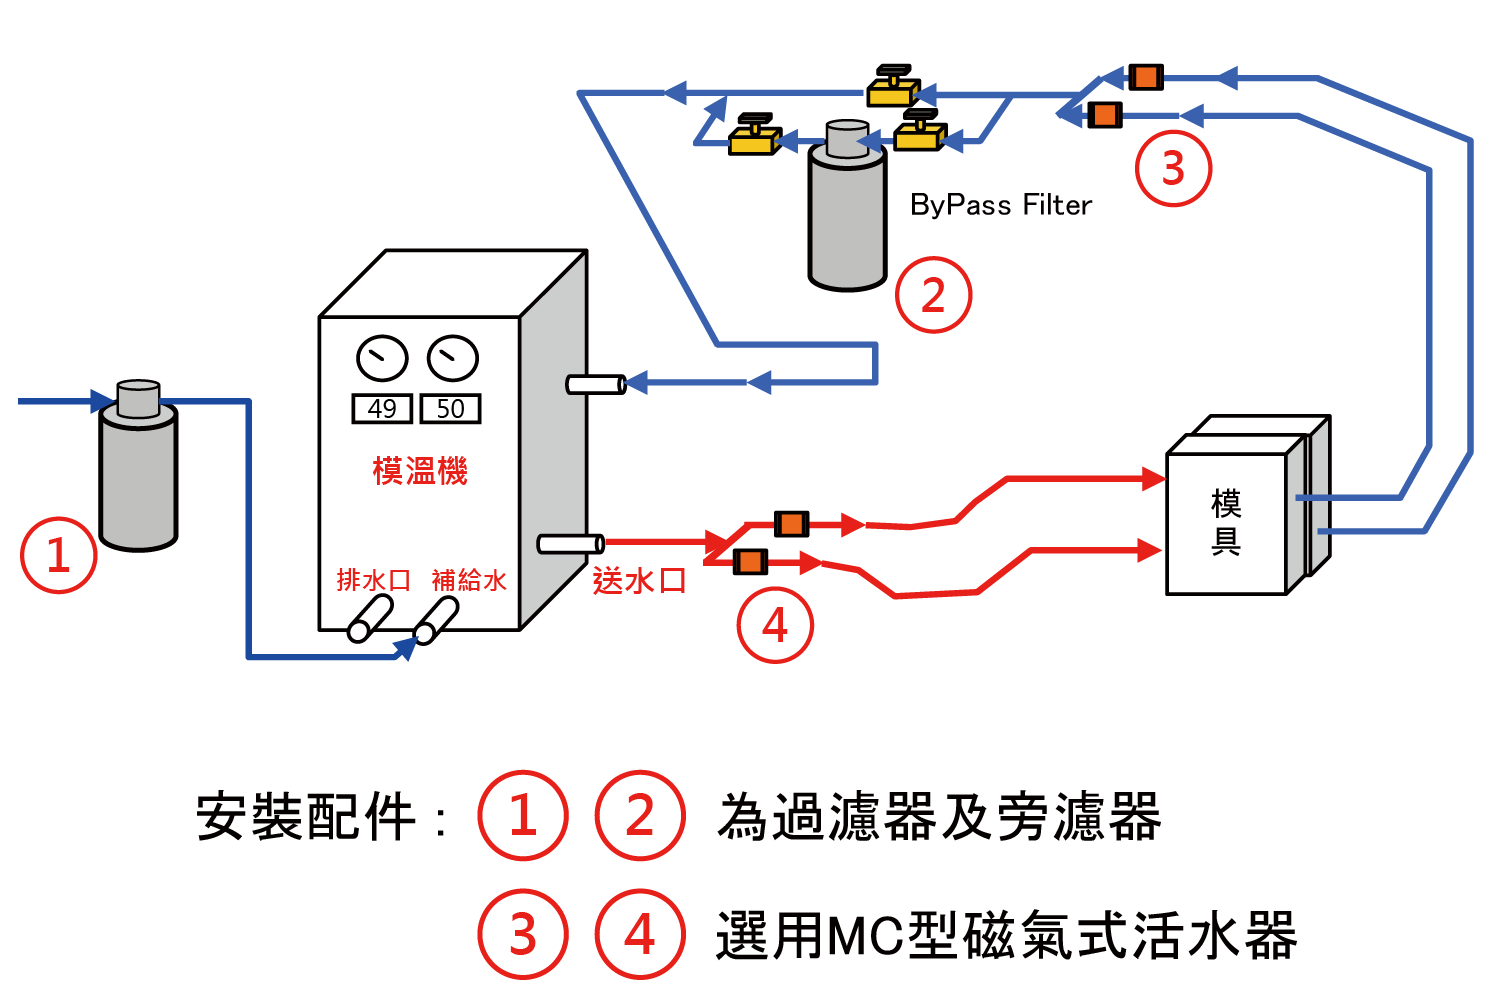 此為模溫機循環回路的安裝示意圖，建議在濾器前及模溫機後安裝本產品